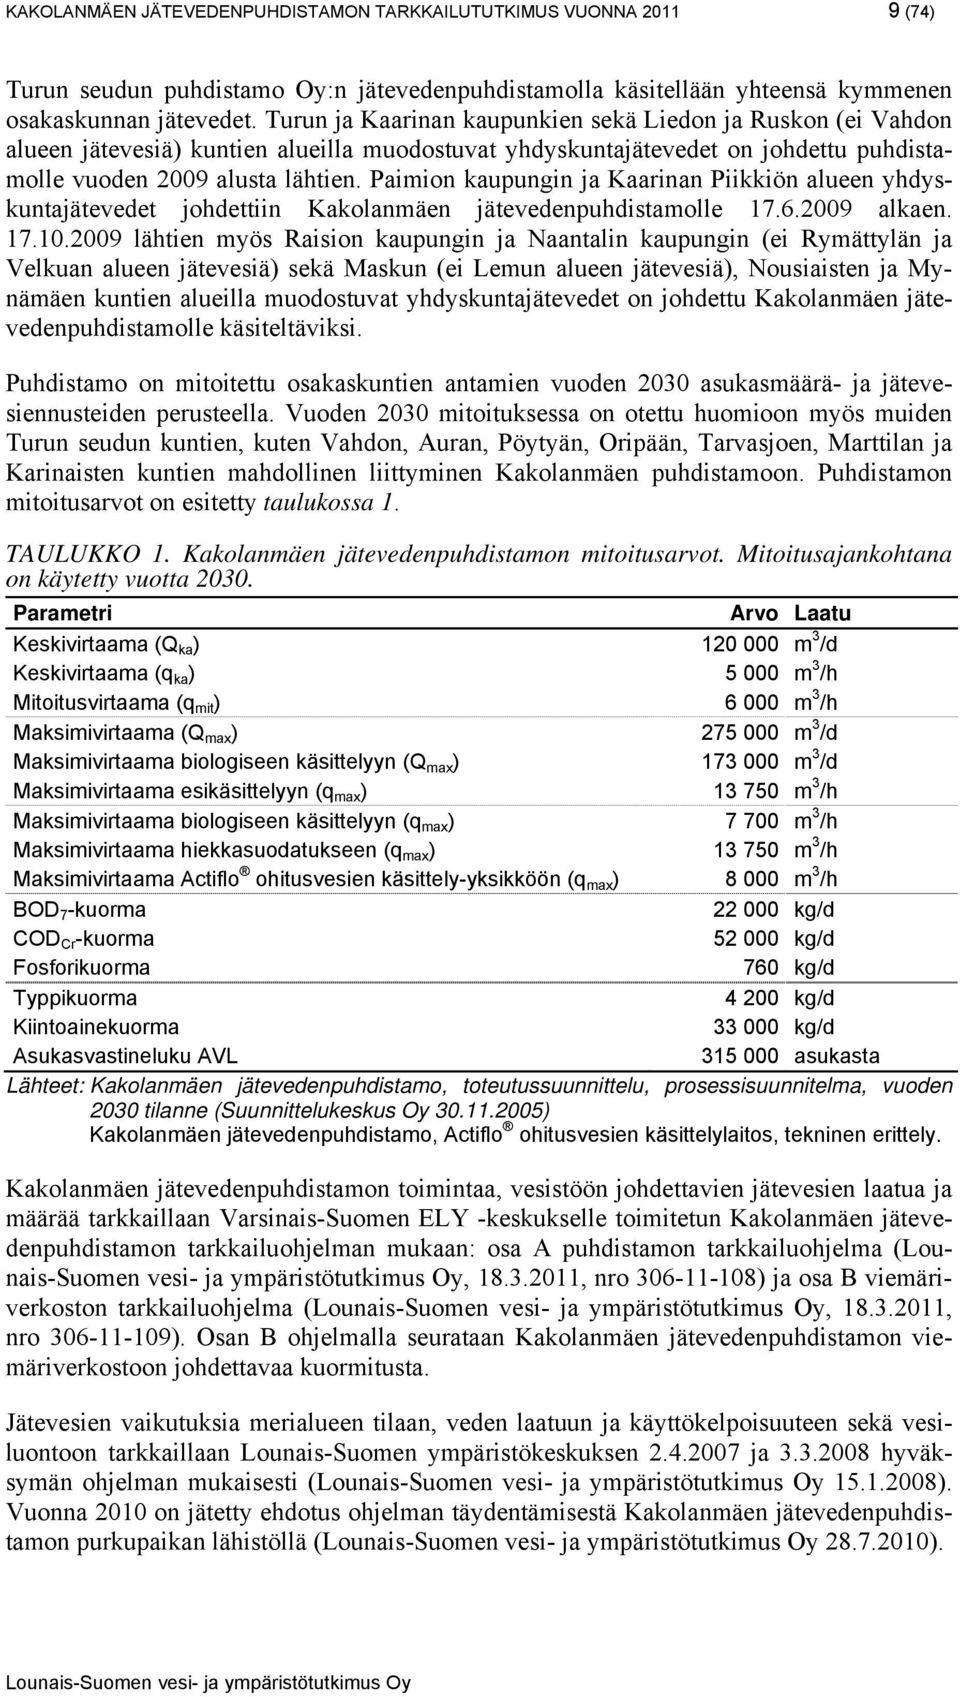 Paimion kaupungin ja Kaarinan Piikkiön alueen yhdyskuntajätevedet johdettiin Kakolanmäen jätevedenpuhdistamolle 17.6.2009 alkaen. 17.10.